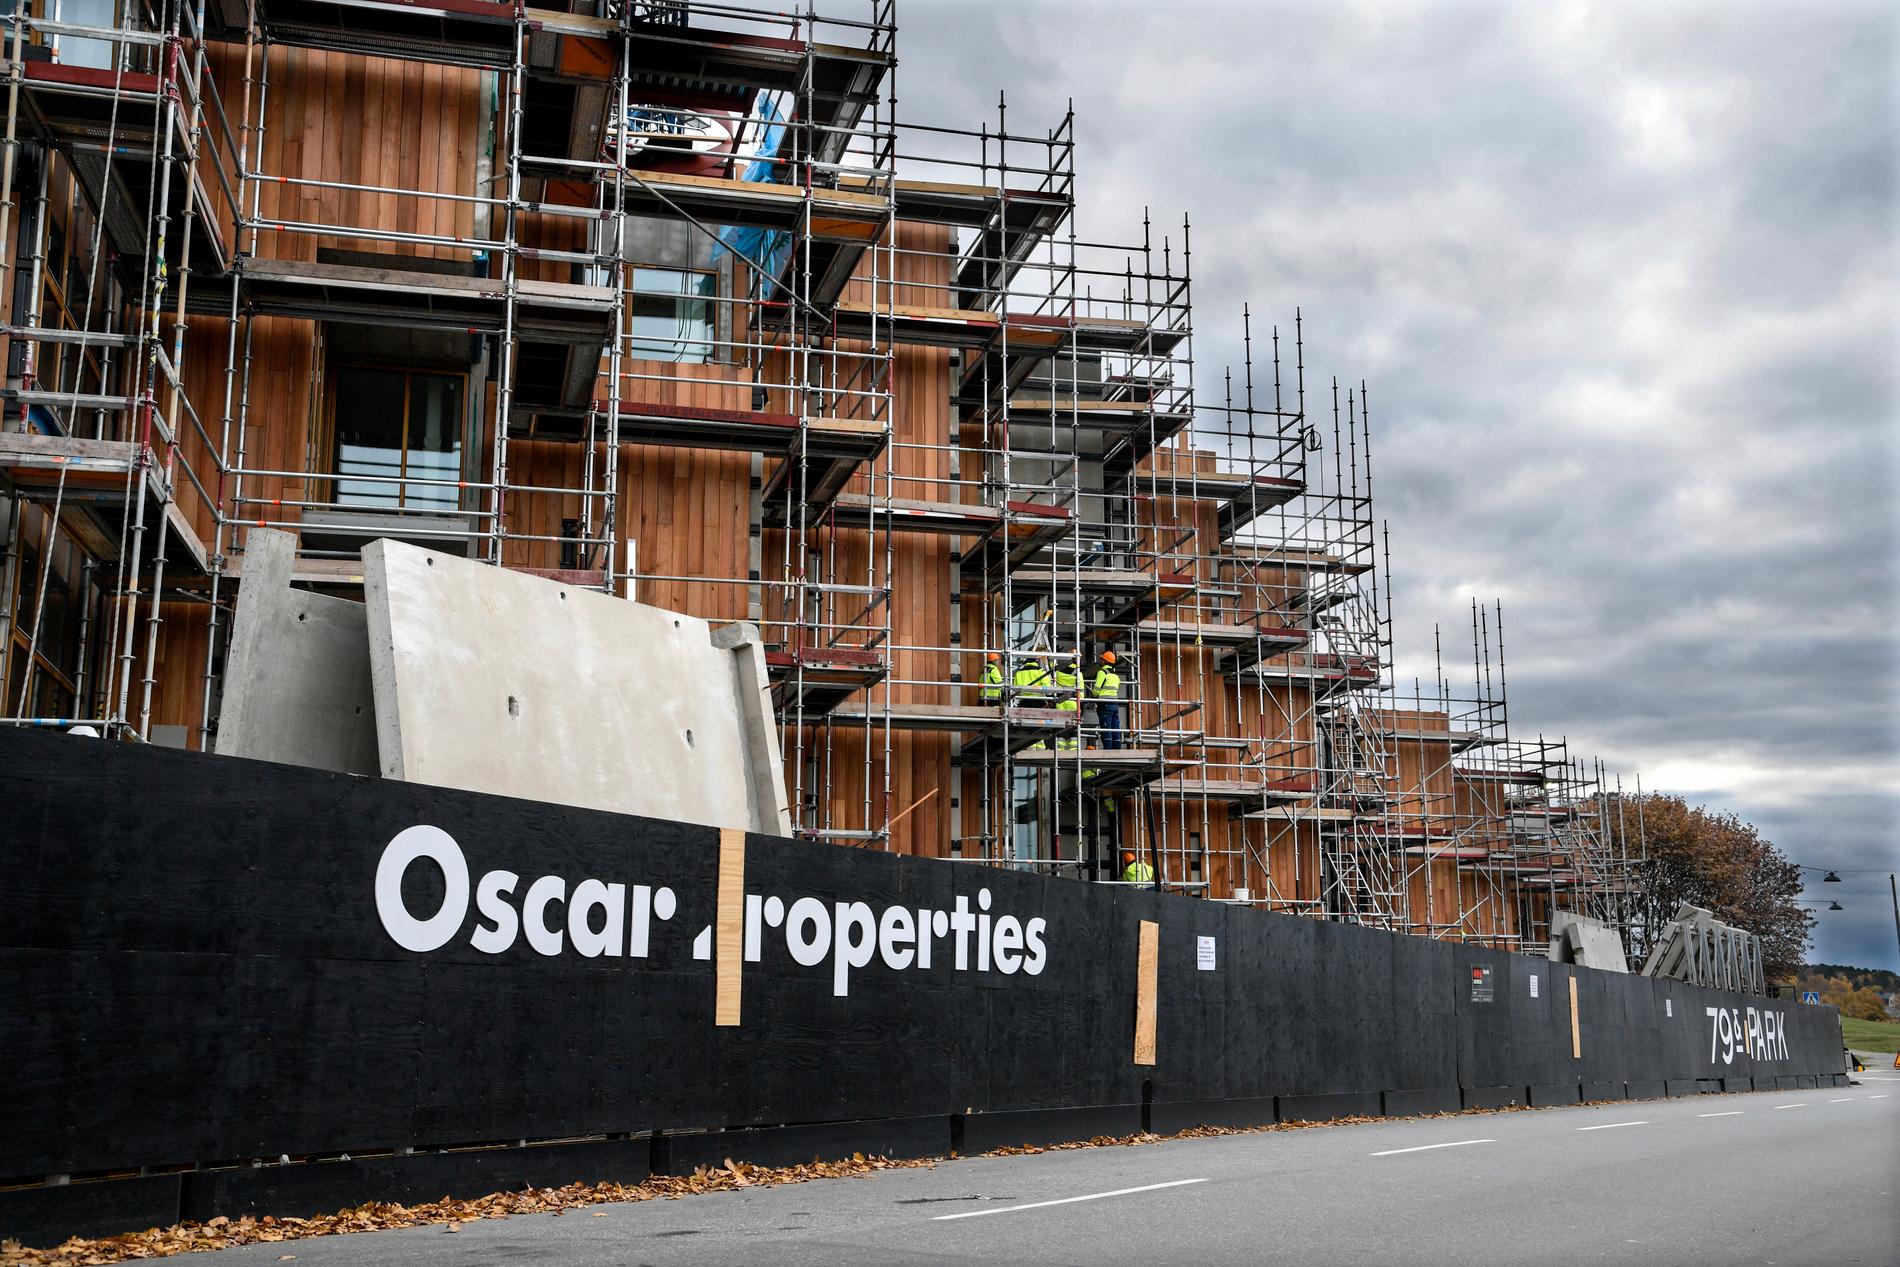 Oscar Properties pågående bostadsprojekt "79&Park" på Gärdet i Stockholm. Sent i går meddelade bolaget att vinsten för helåret kommer att bli 20 procent lägre än man tidigare räknat med.